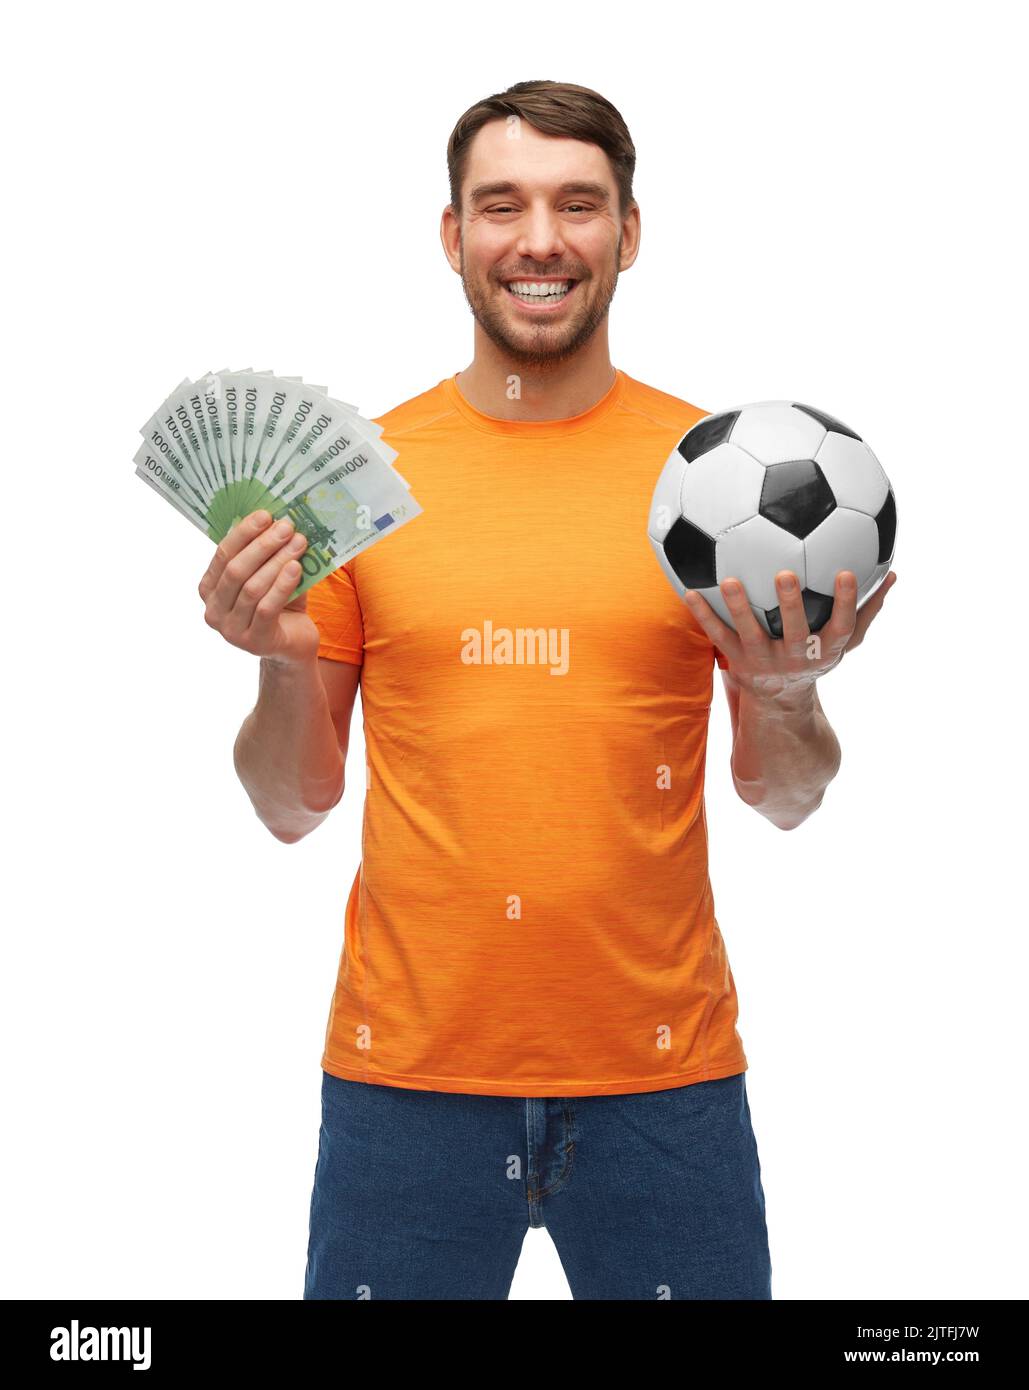 feliz fan del fútbol con balón de fútbol y dinero Foto de stock